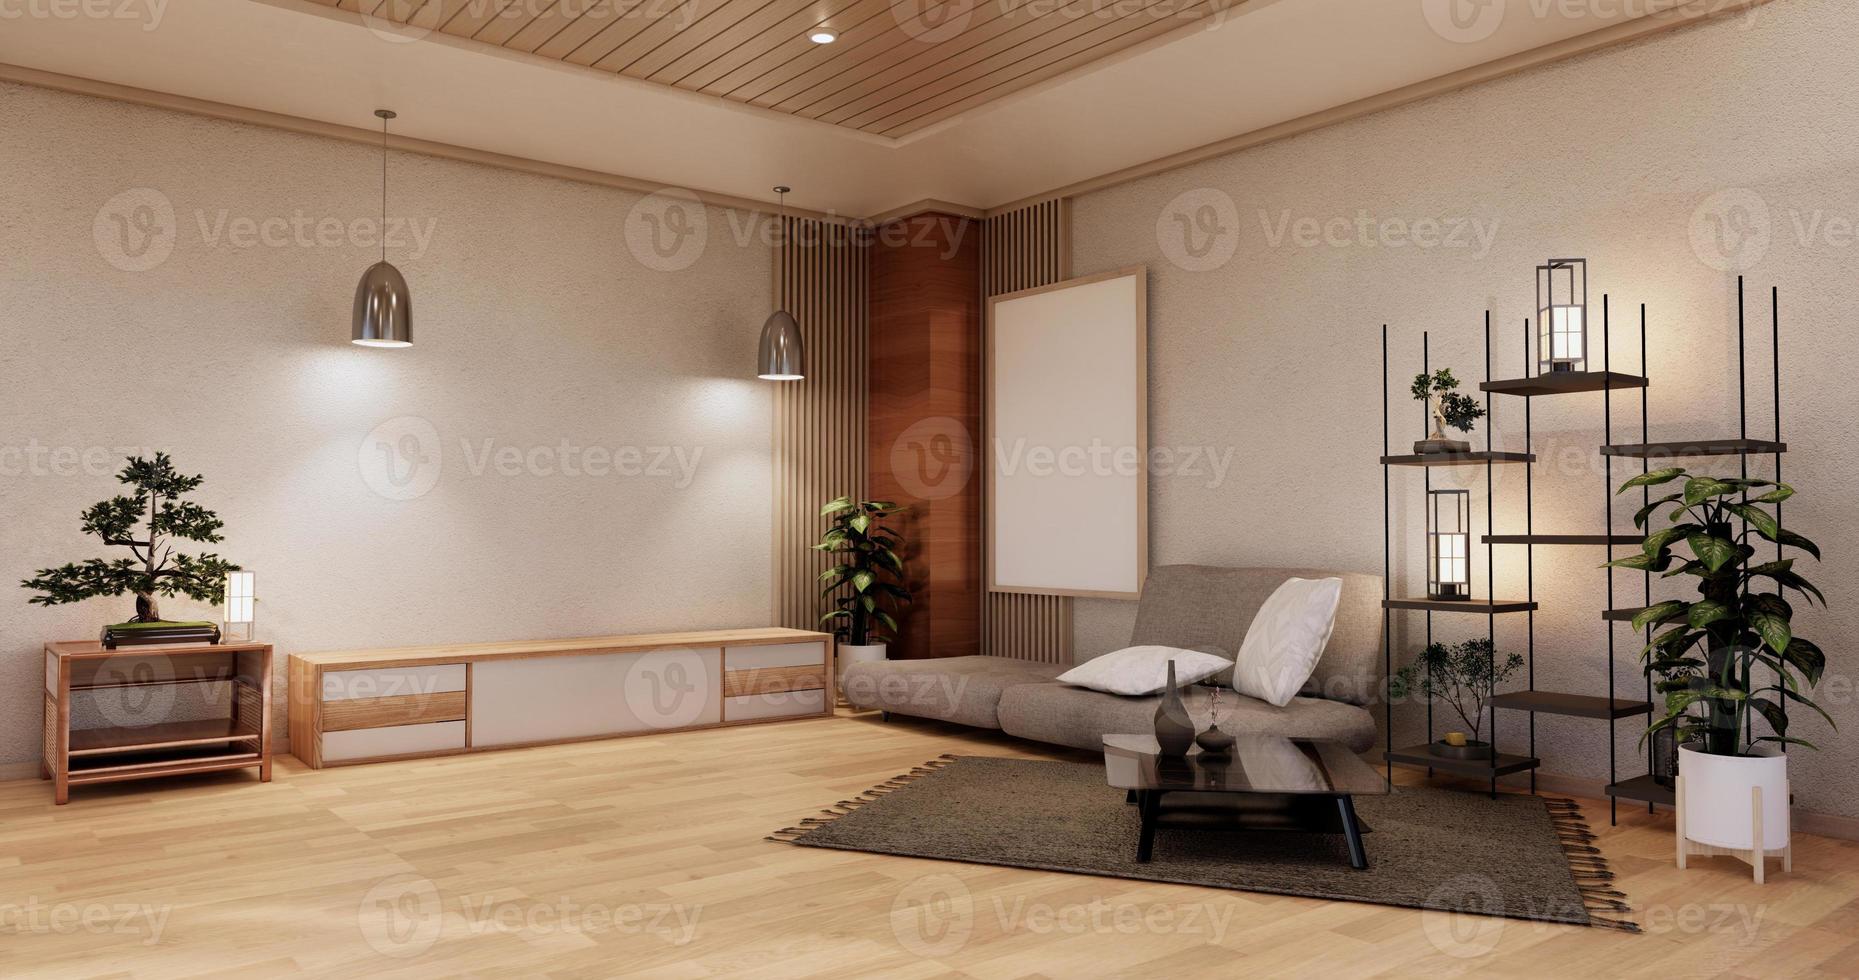 moderna japanska vardagsrum interiör, soffa och skåp bord på rum vit vägg bakgrund. 3D-rendering foto